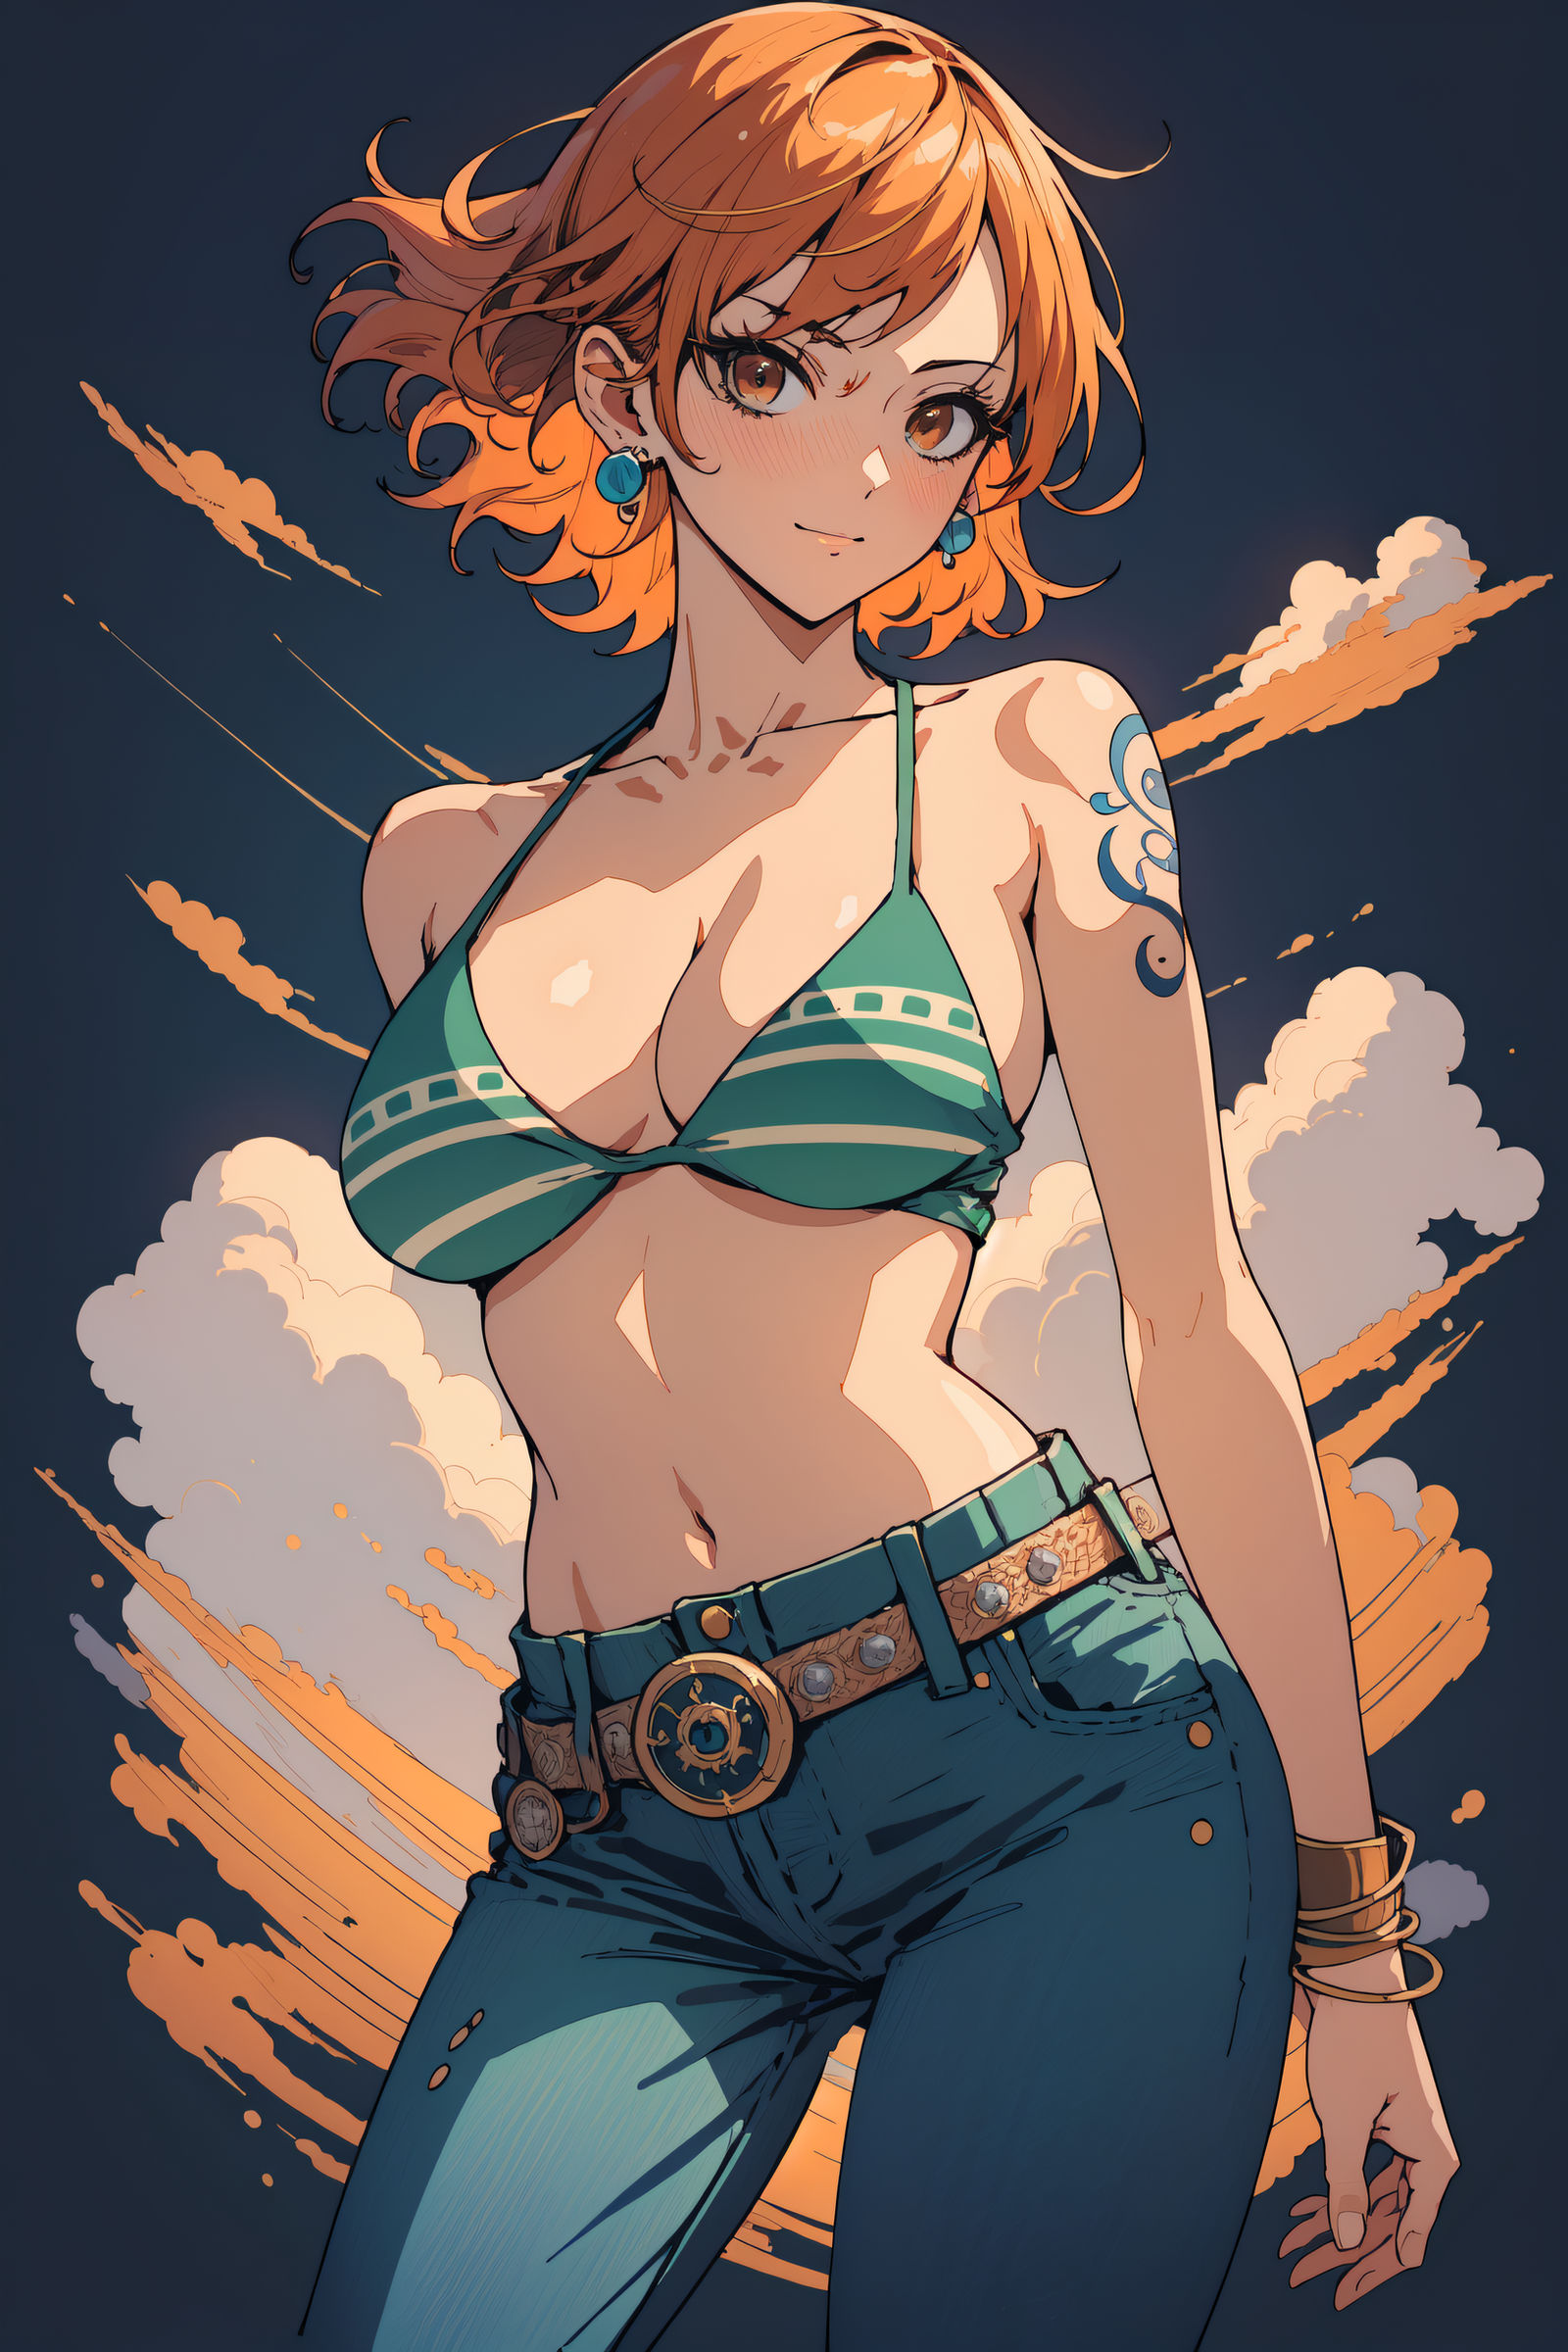 Nami (One Piece) by Dantegonist on DeviantArt